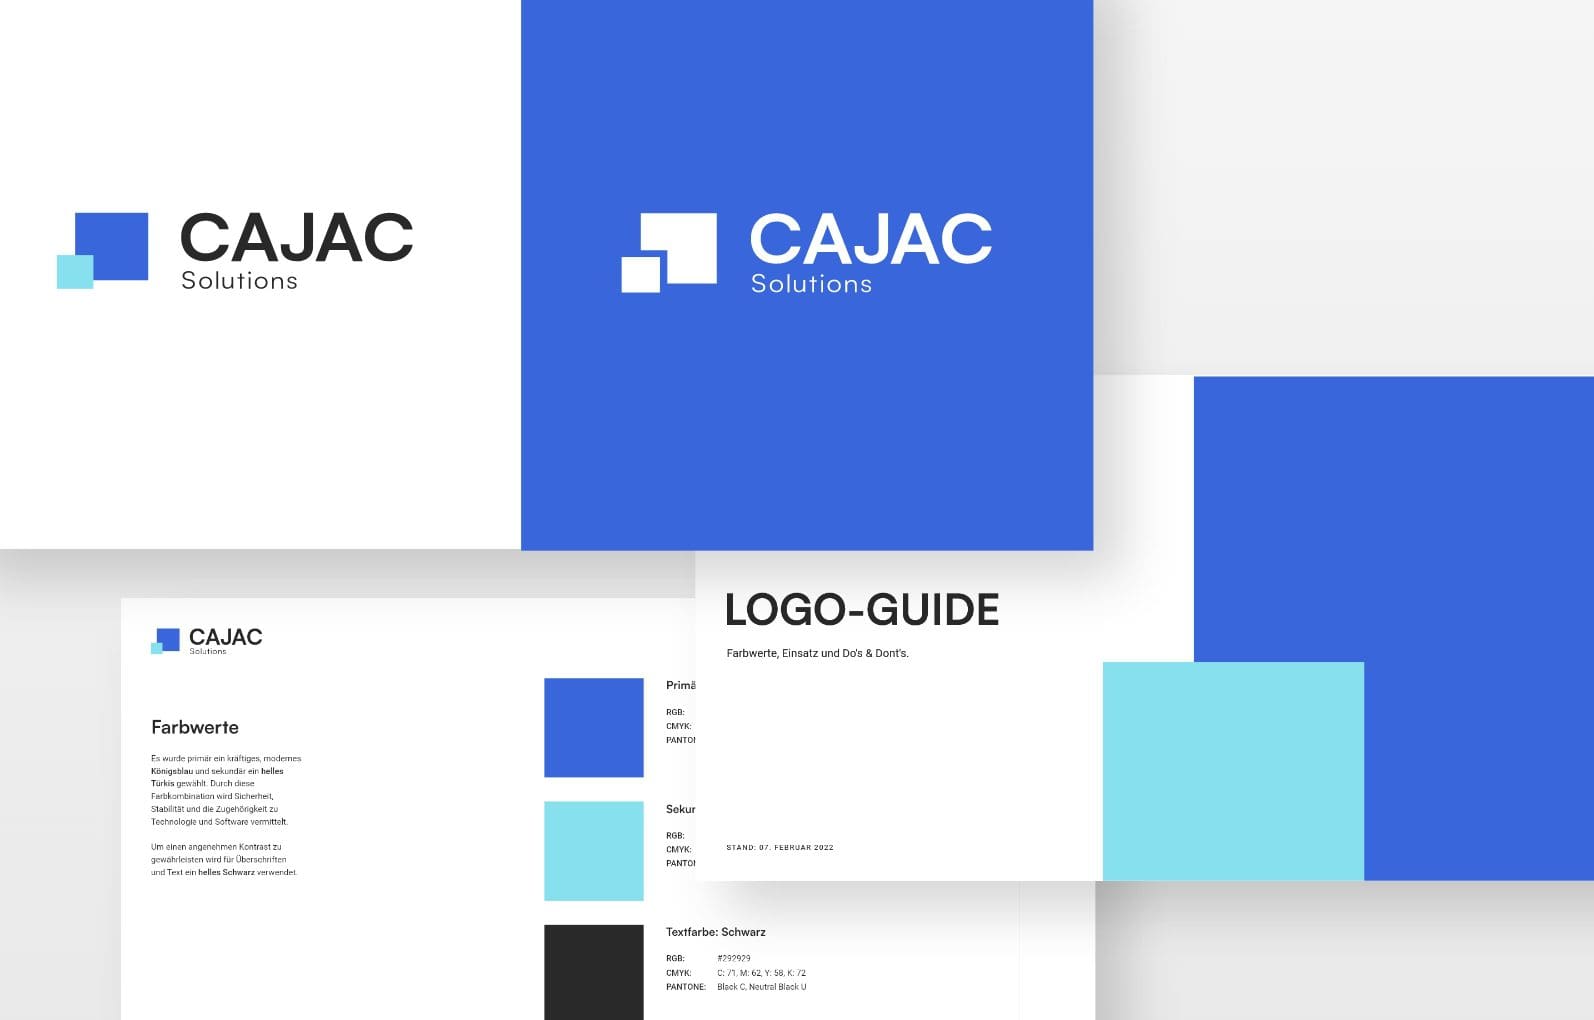 Eine Darstellung des Markenkonzepts von CAJAC Solutions, bestehend aus verschiedenen Materialien, die das Corporate Design zeigen. Oben links ist das Logo auf weißem Hintergrund, oben rechts auf blauem Hintergrund zu sehen. Unten links befindet sich eine Farbpalette mit Beschreibungen, und rechts ist ein 'LOGO-GUIDE' mit Farbspezifikationen und Typografie-Details abgebildet.